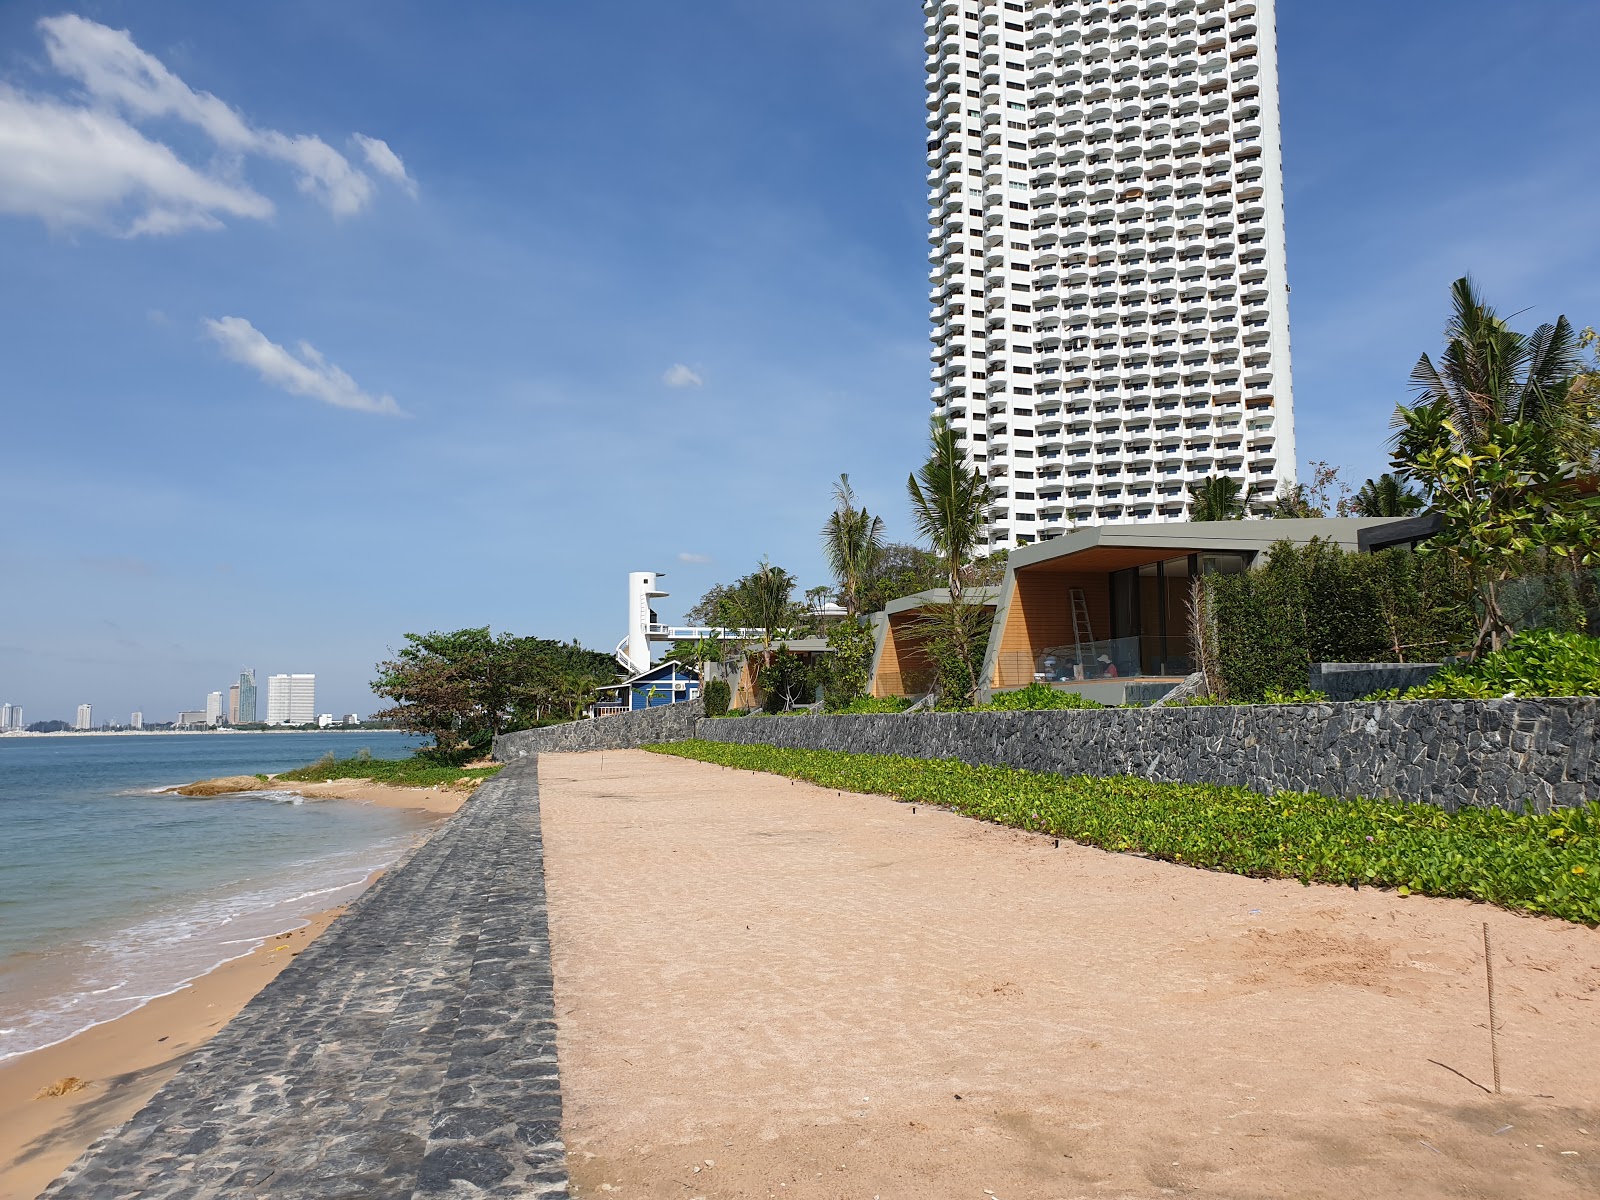 Photo de Pattaya Paradise Beach - endroit populaire parmi les connaisseurs de la détente